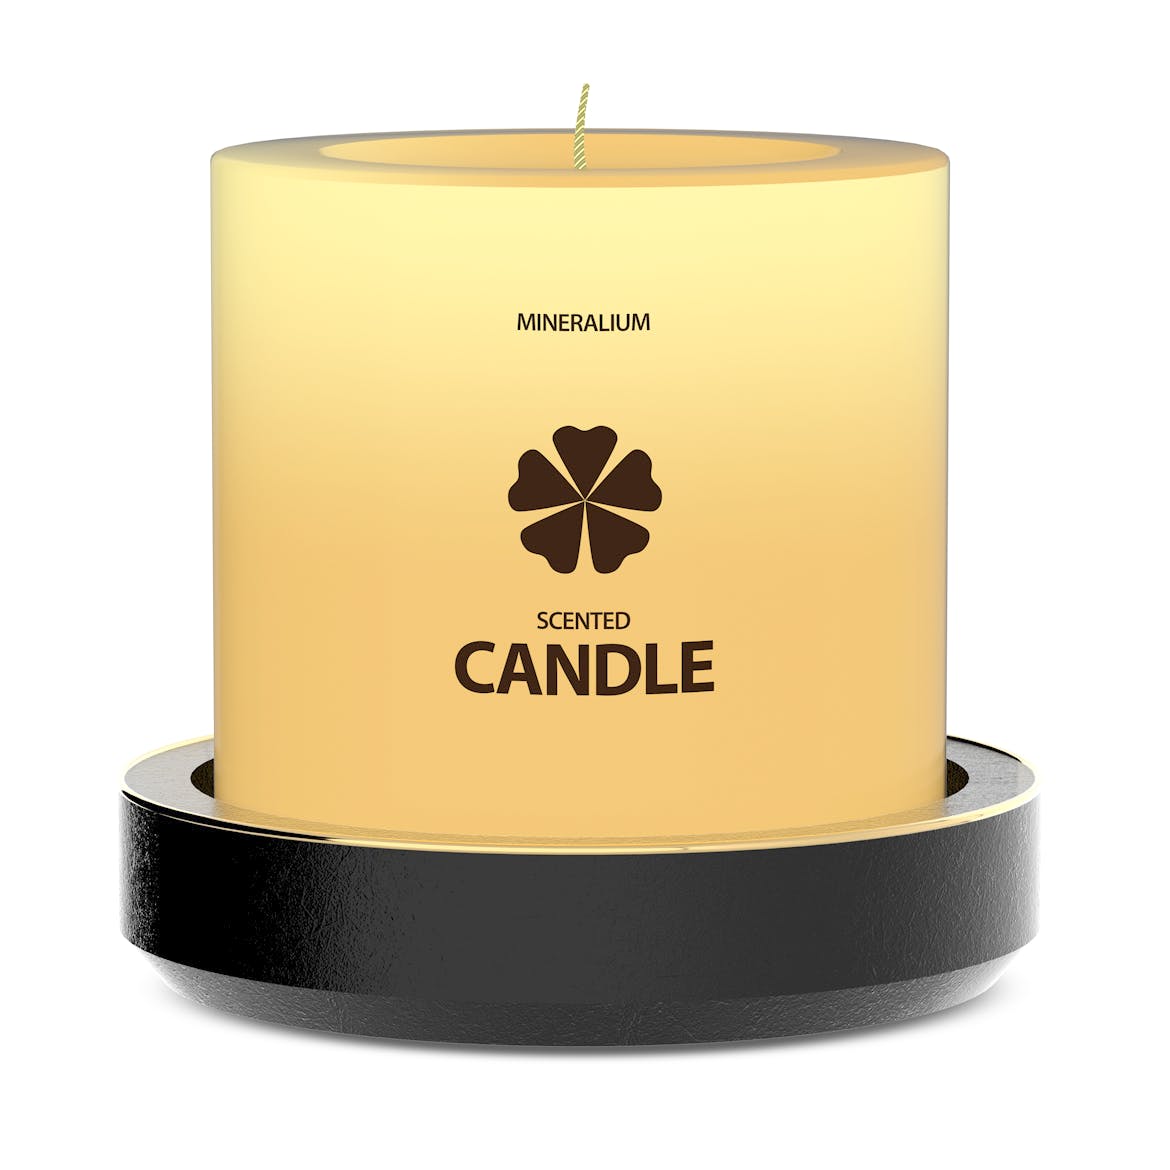 木制蜡烛外观设计PSD样机模板 Wooden Candle PSD Mock-ups插图(1)